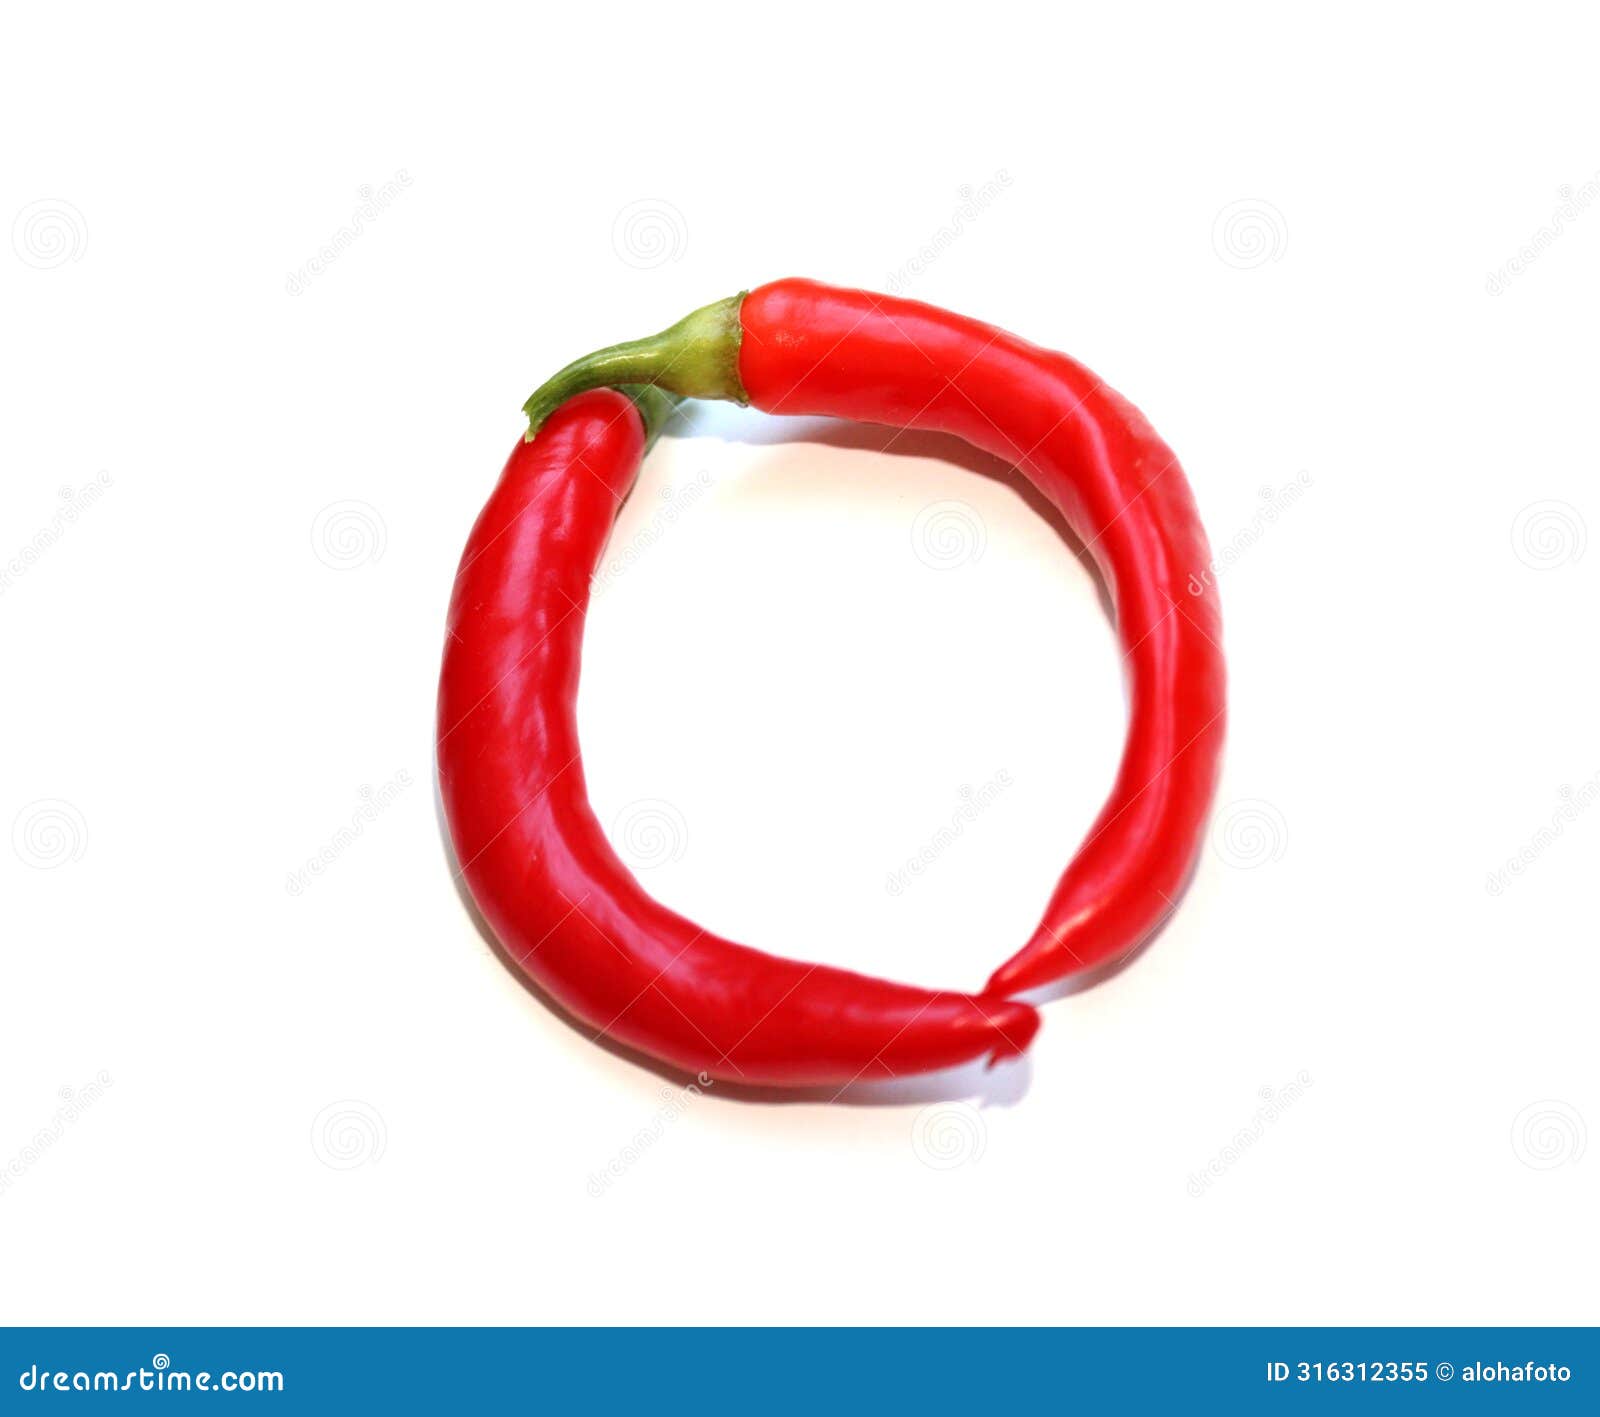 letter o from red green chili pepper letter for mojo rojo, mojo verde recipe